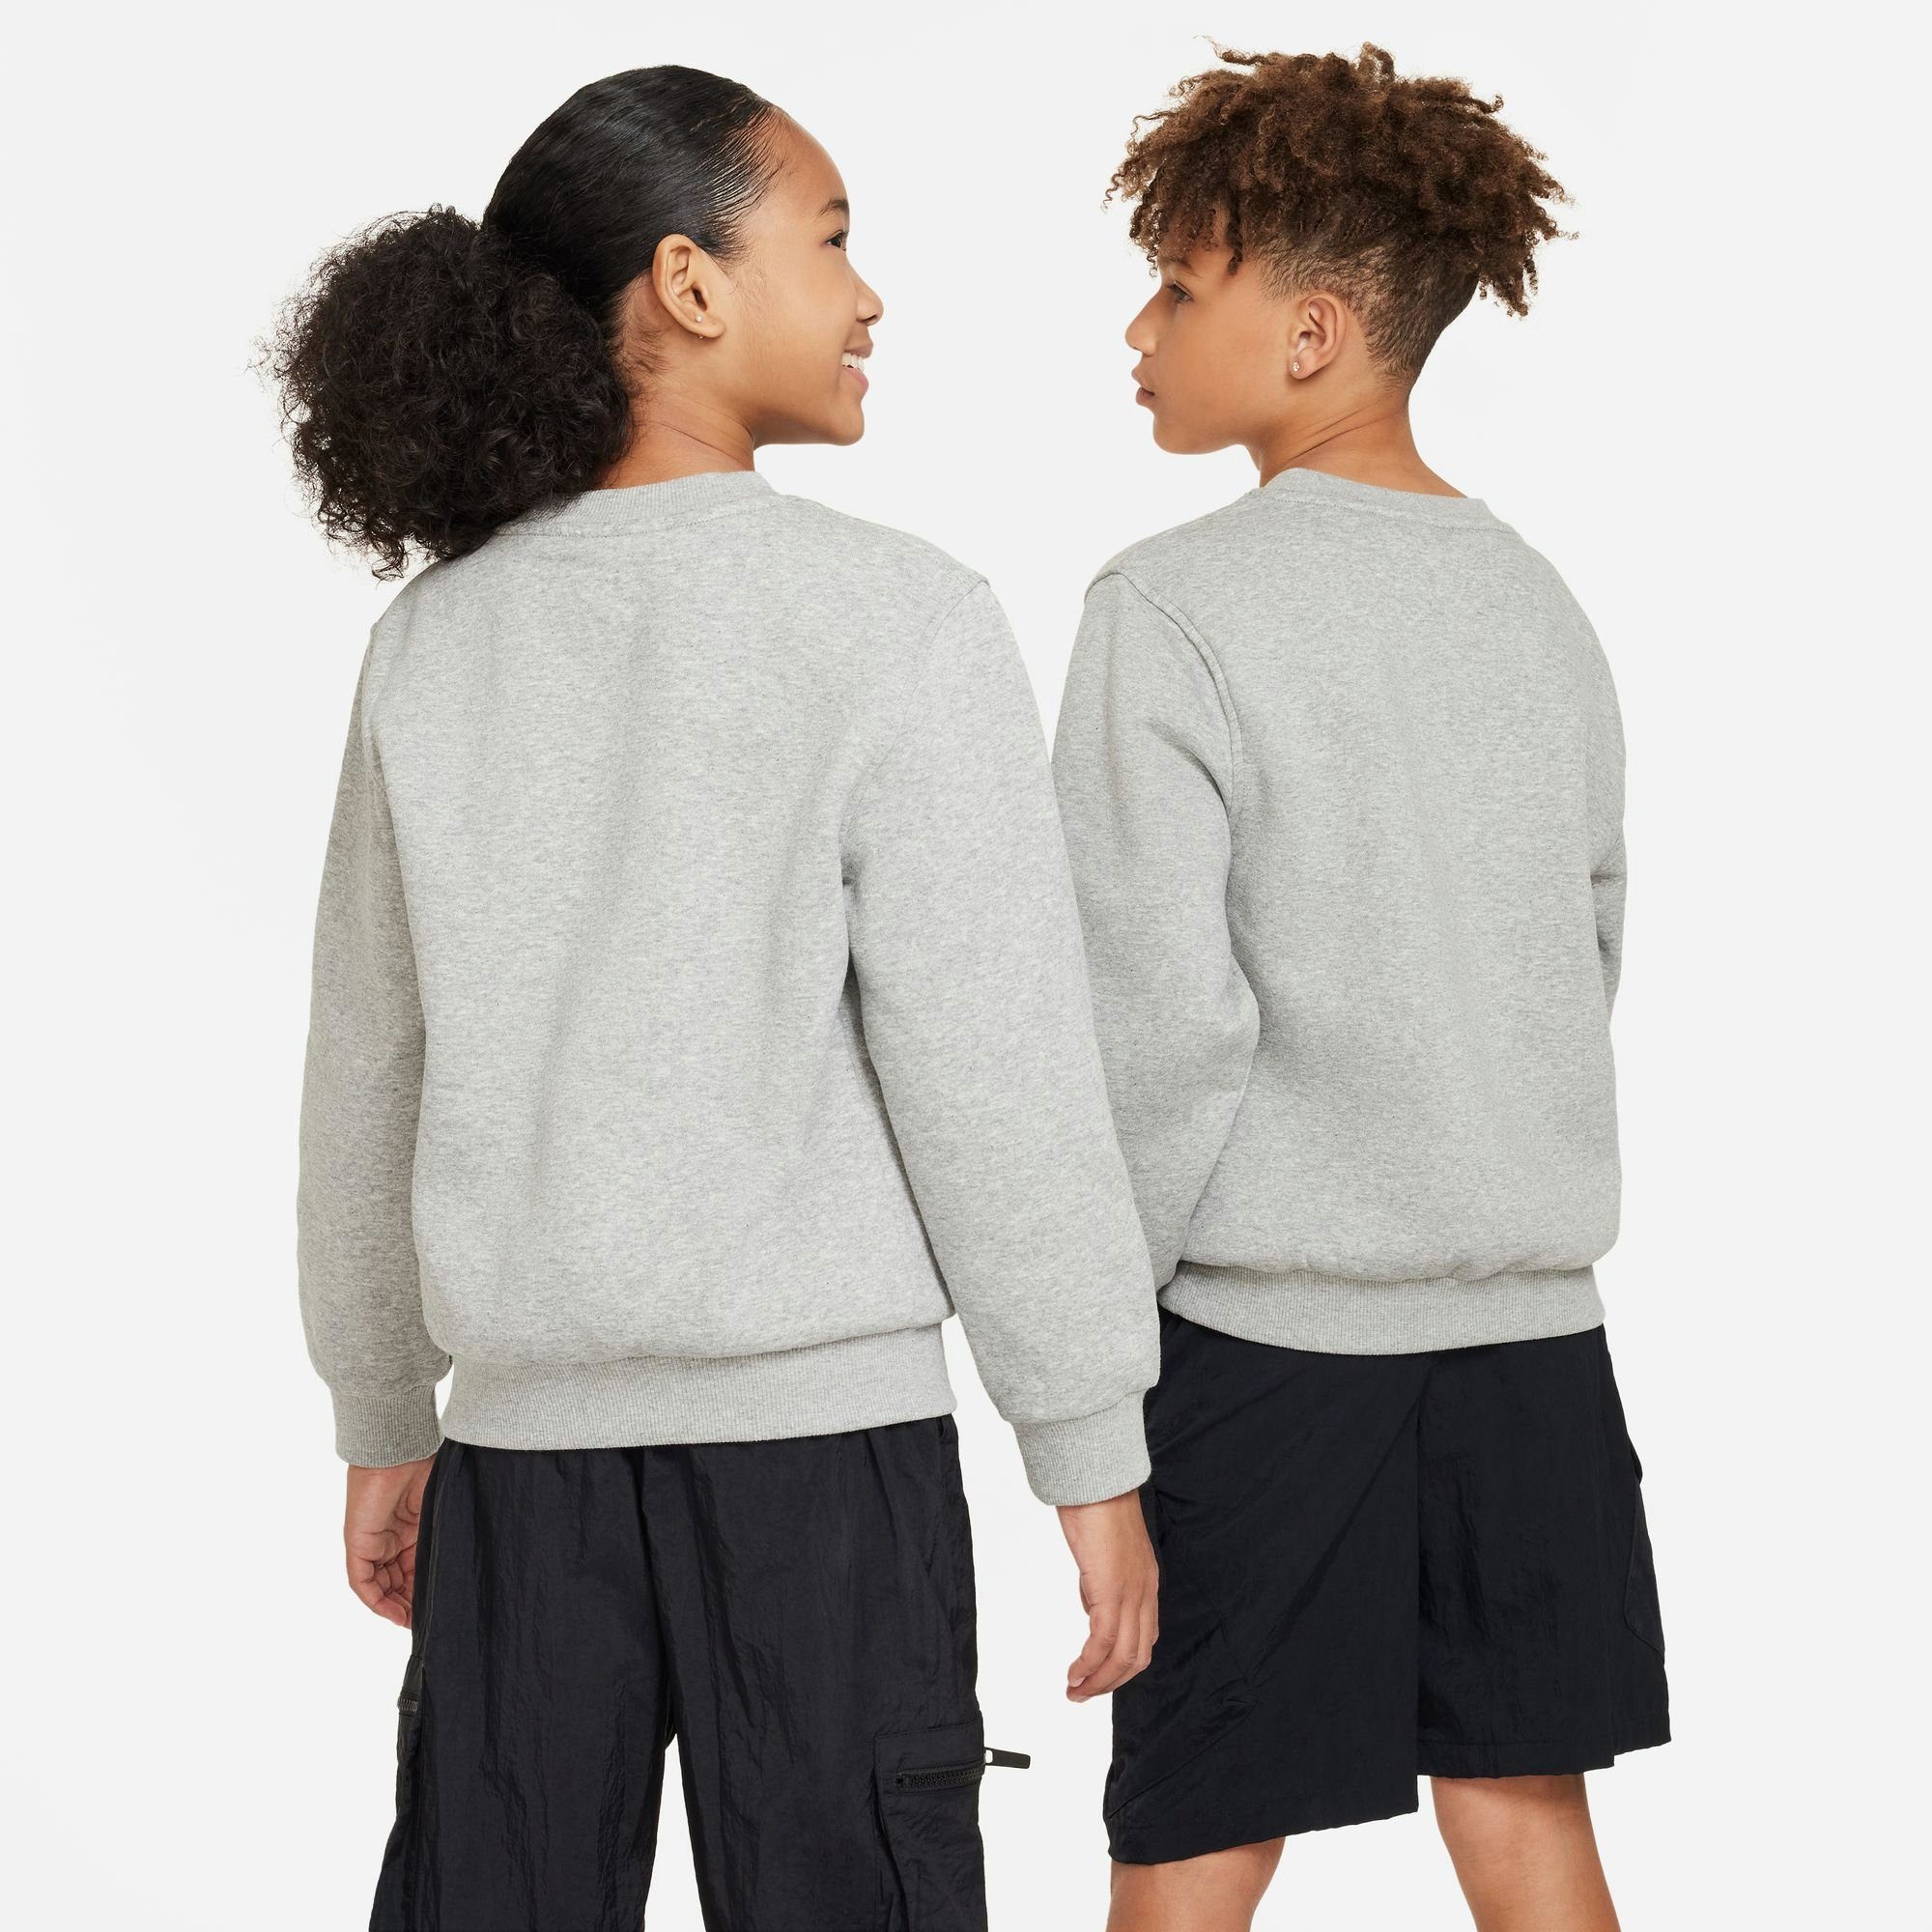 HEATHER/WHITE FLEECE CLUB Sportswear GREY SWEATSHIRT DK BIG Nike Sweatshirt KIDS'